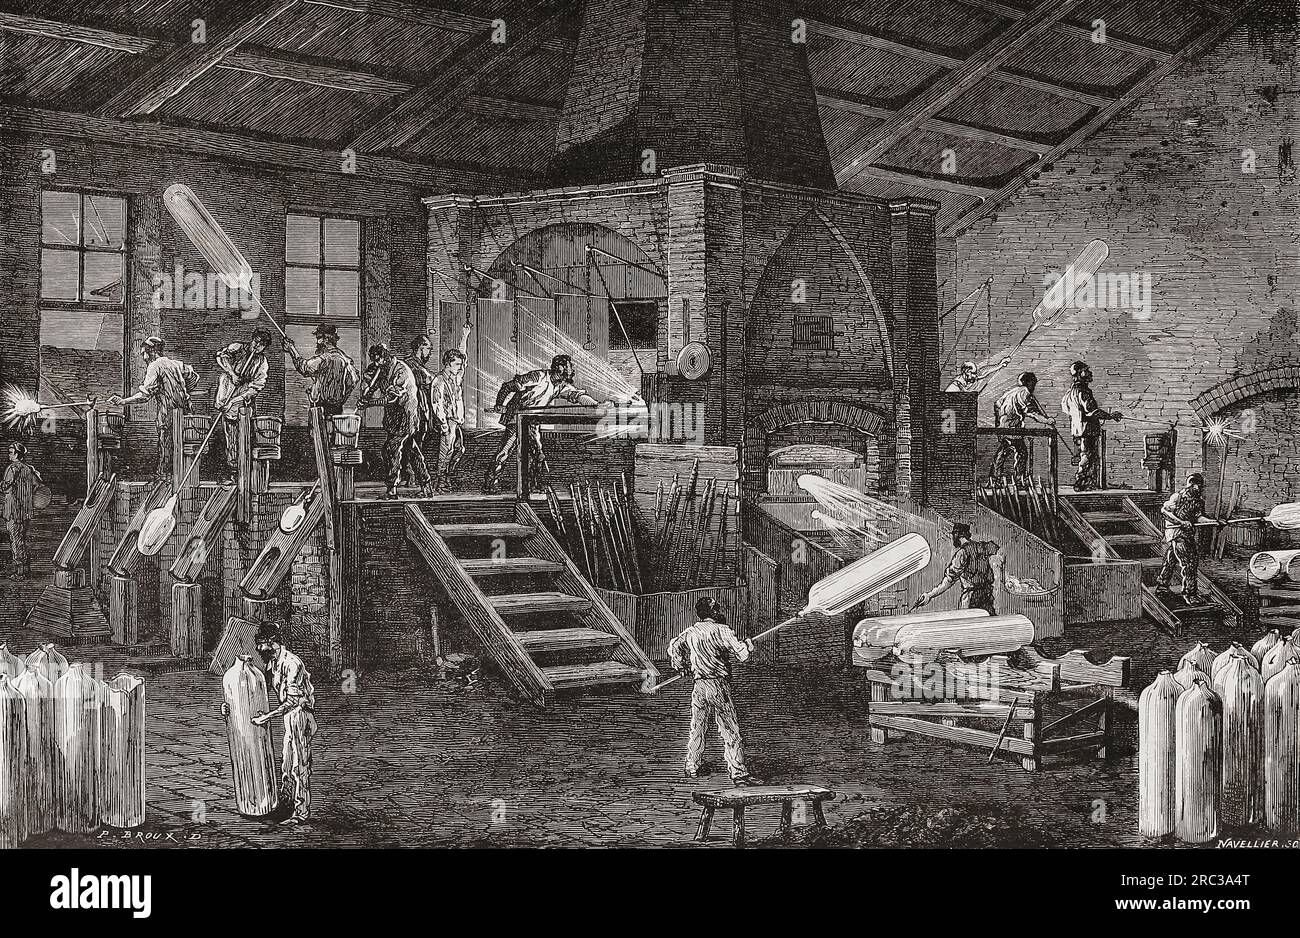 fabbrica di vetro del xix secolo che produce cilindri di vetro. Dopo un'illustrazione in Les merveilles de l'industrie, di Louis Figuier, pubblicata nel 1877. Foto Stock